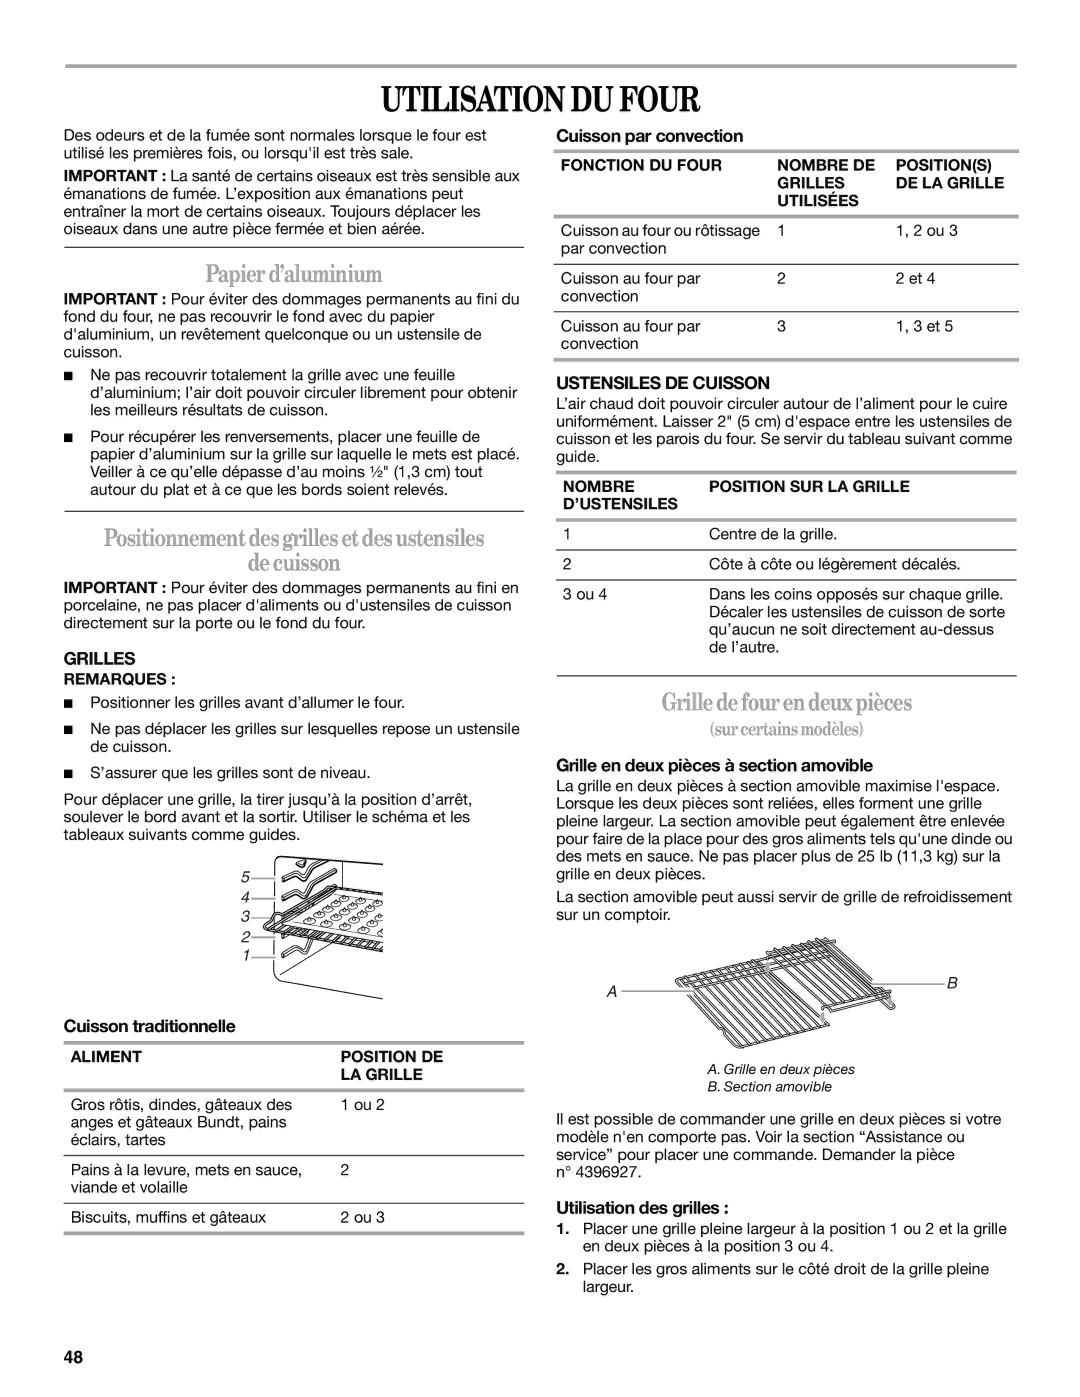 Whirlpool GERC4110SB0 manual Utilisation DU Four, Papierd’aluminium, Positionnementdesgrilles etdesustensiles Decuisson 